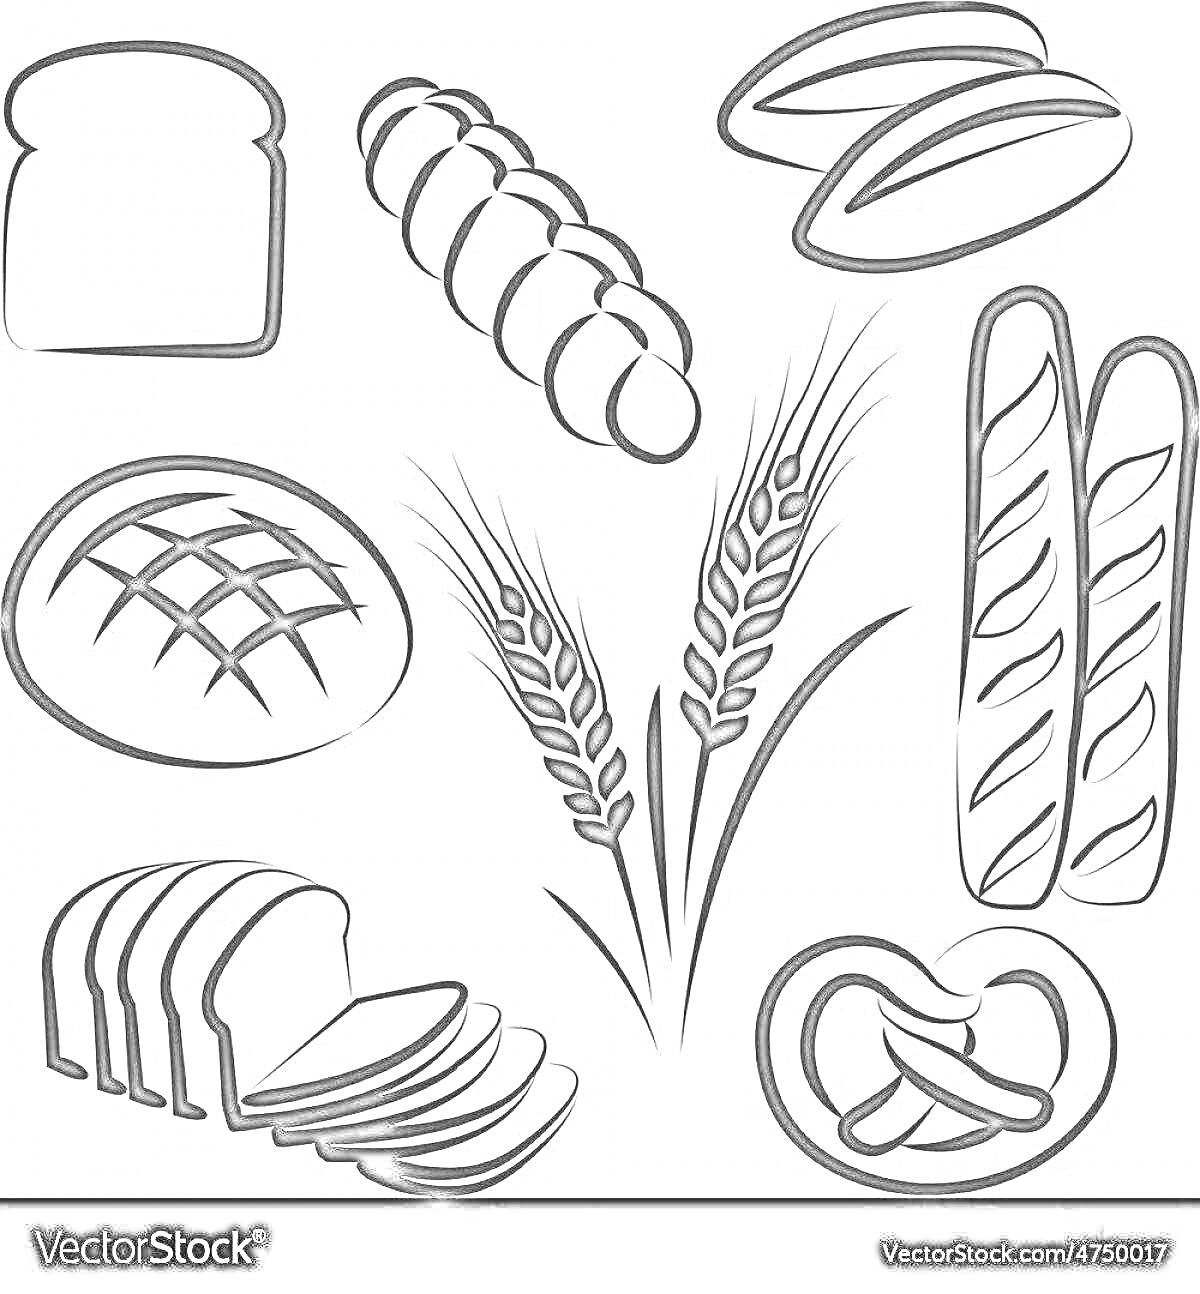 Раскраска Хлебобулочные изделия — буханка хлеба, плетеный хлеб, две булочки, круглый хлеб с насечками, два колоса пшеницы, багеты, нарезанные ломти хлеба, крендель